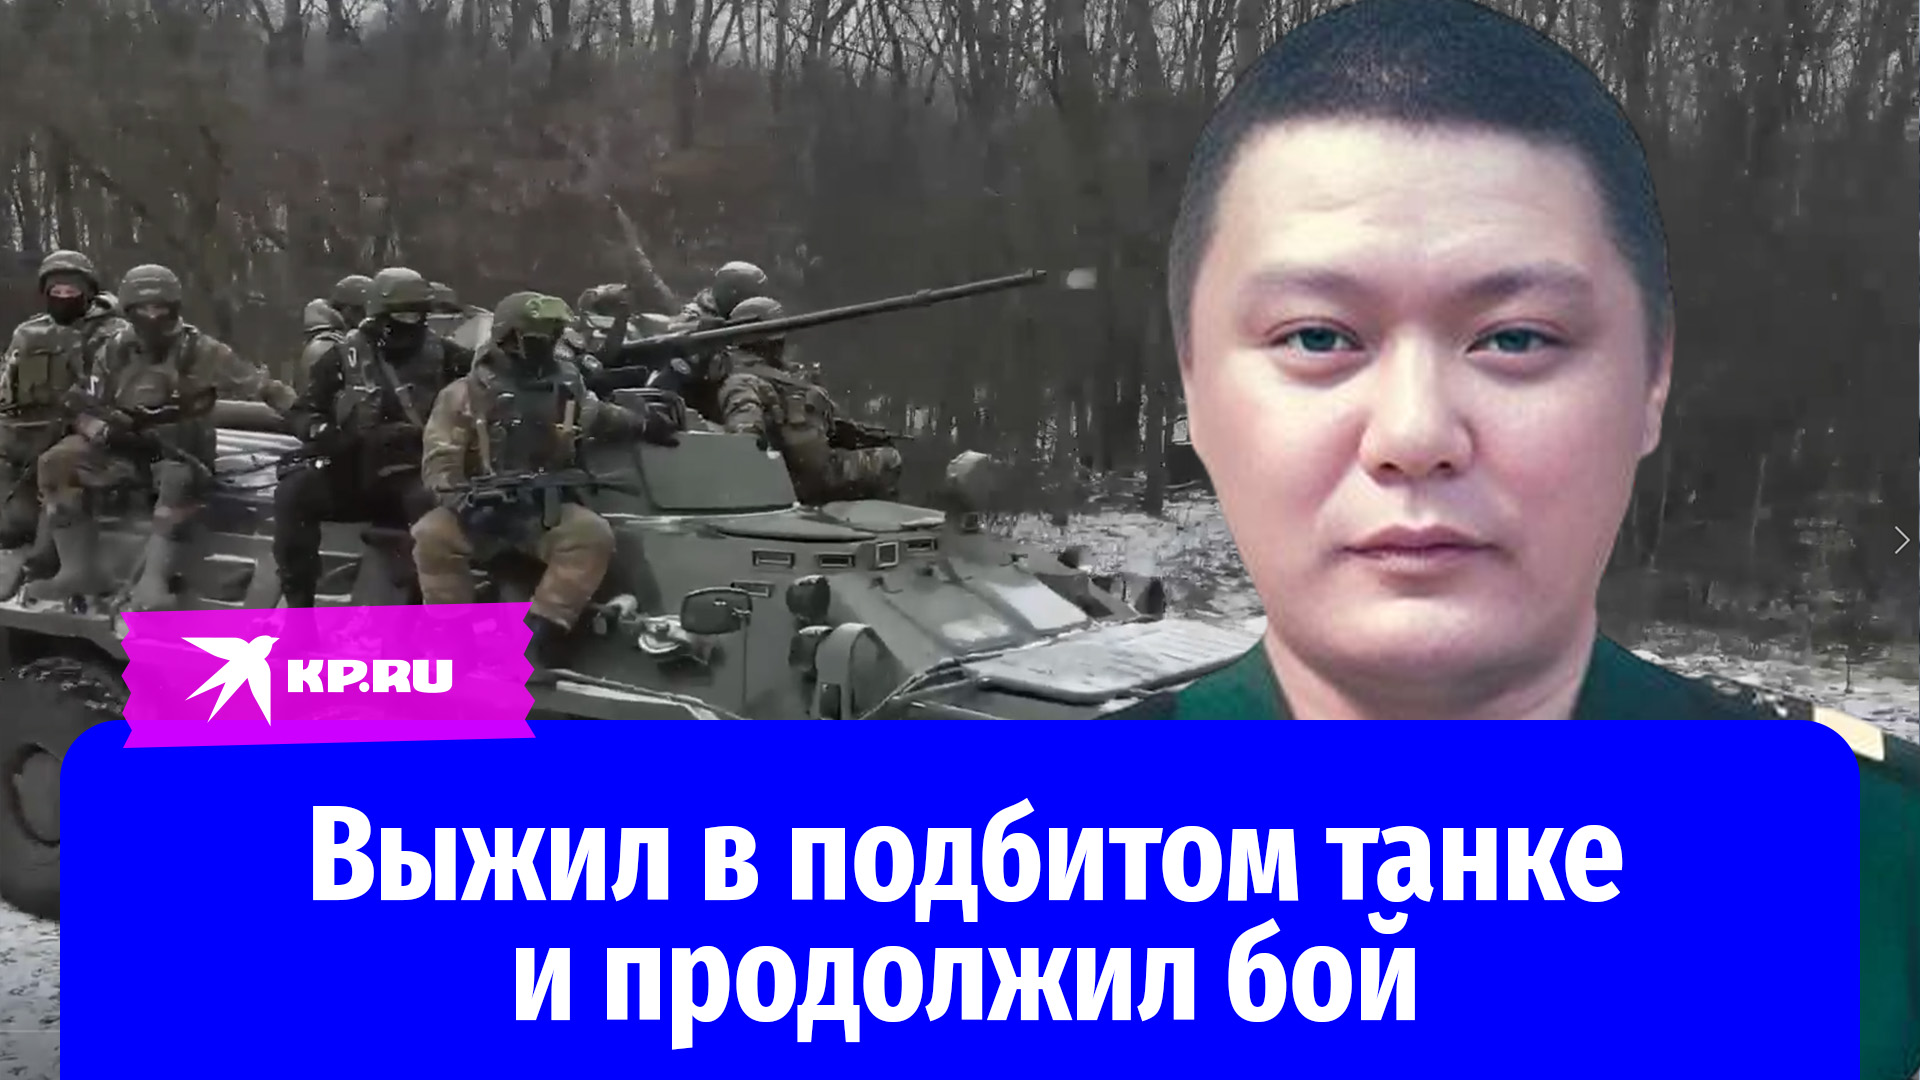 Старший сержант Булат Намжилов выжил в подбитом танке и продолжил бой